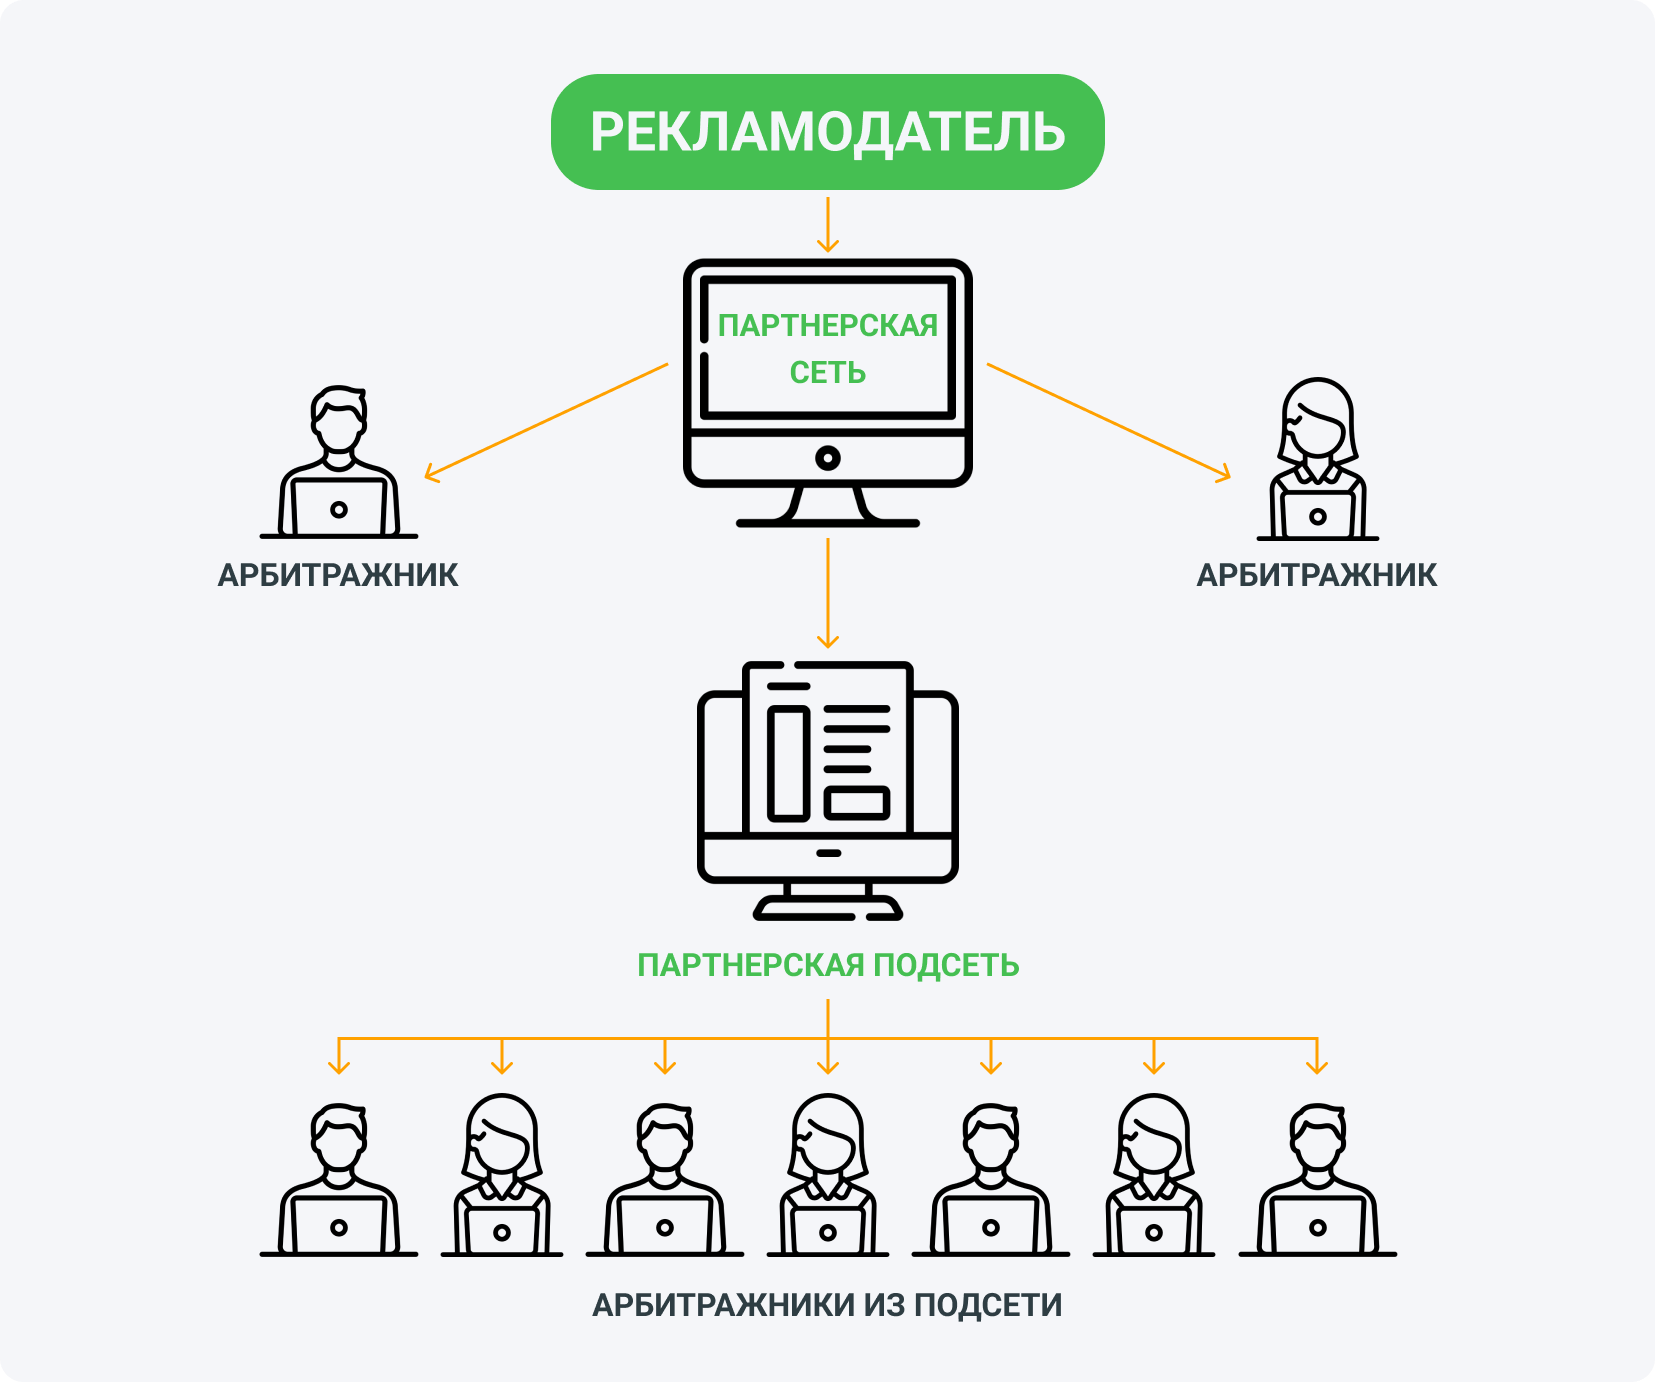 Партнерская подсеть — это внешняя сеть, которая сотрудничает с CPA-сетью как обычный вебмастер.